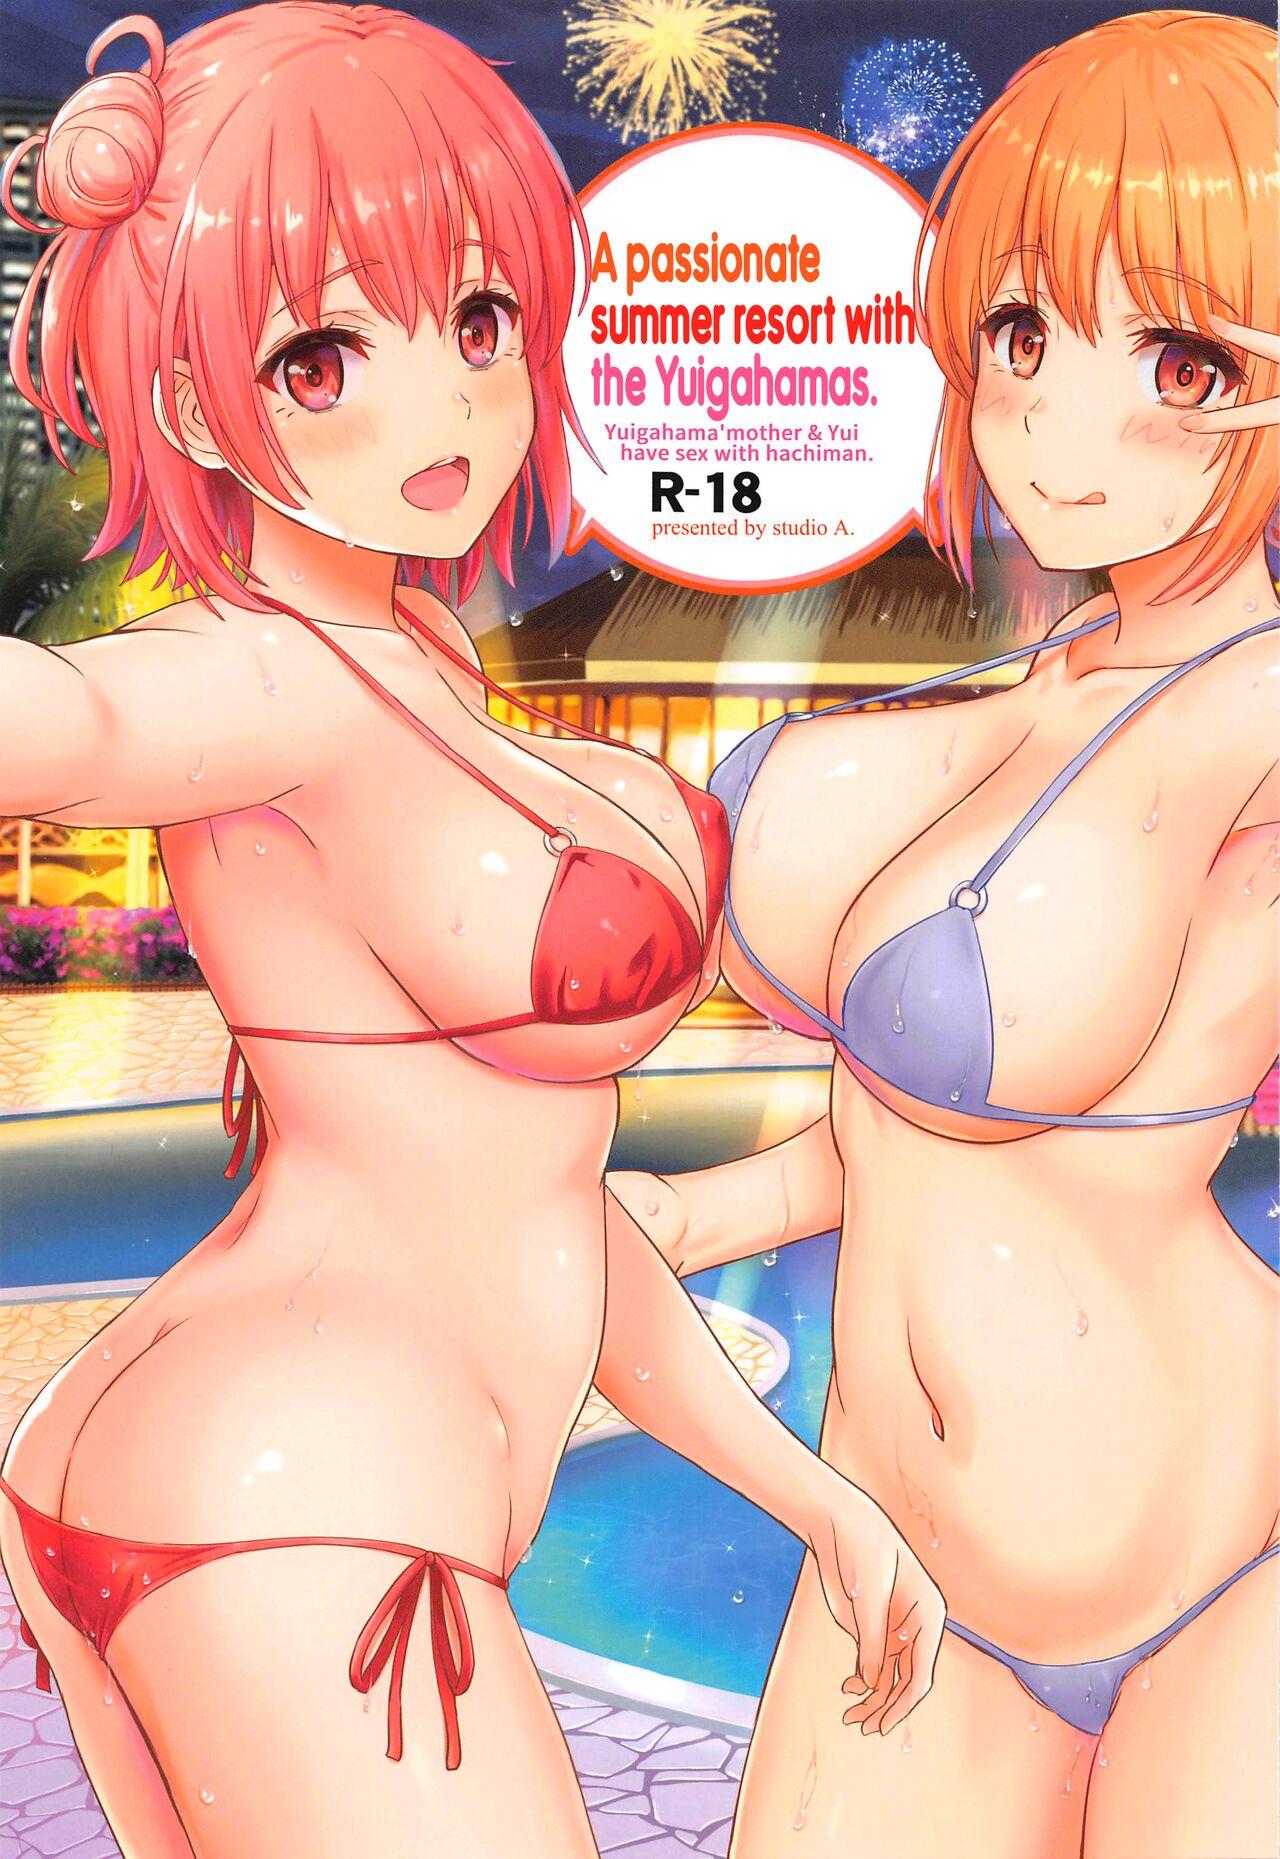 Pink Jounetsuteki na Natsu no Resort o Yuigahama Oyako to. | A Passionate Summer Resort with the Yuigahamas. - Yahari ore no seishun love come wa machigatteiru Free 18 Year Old Porn - Picture 1